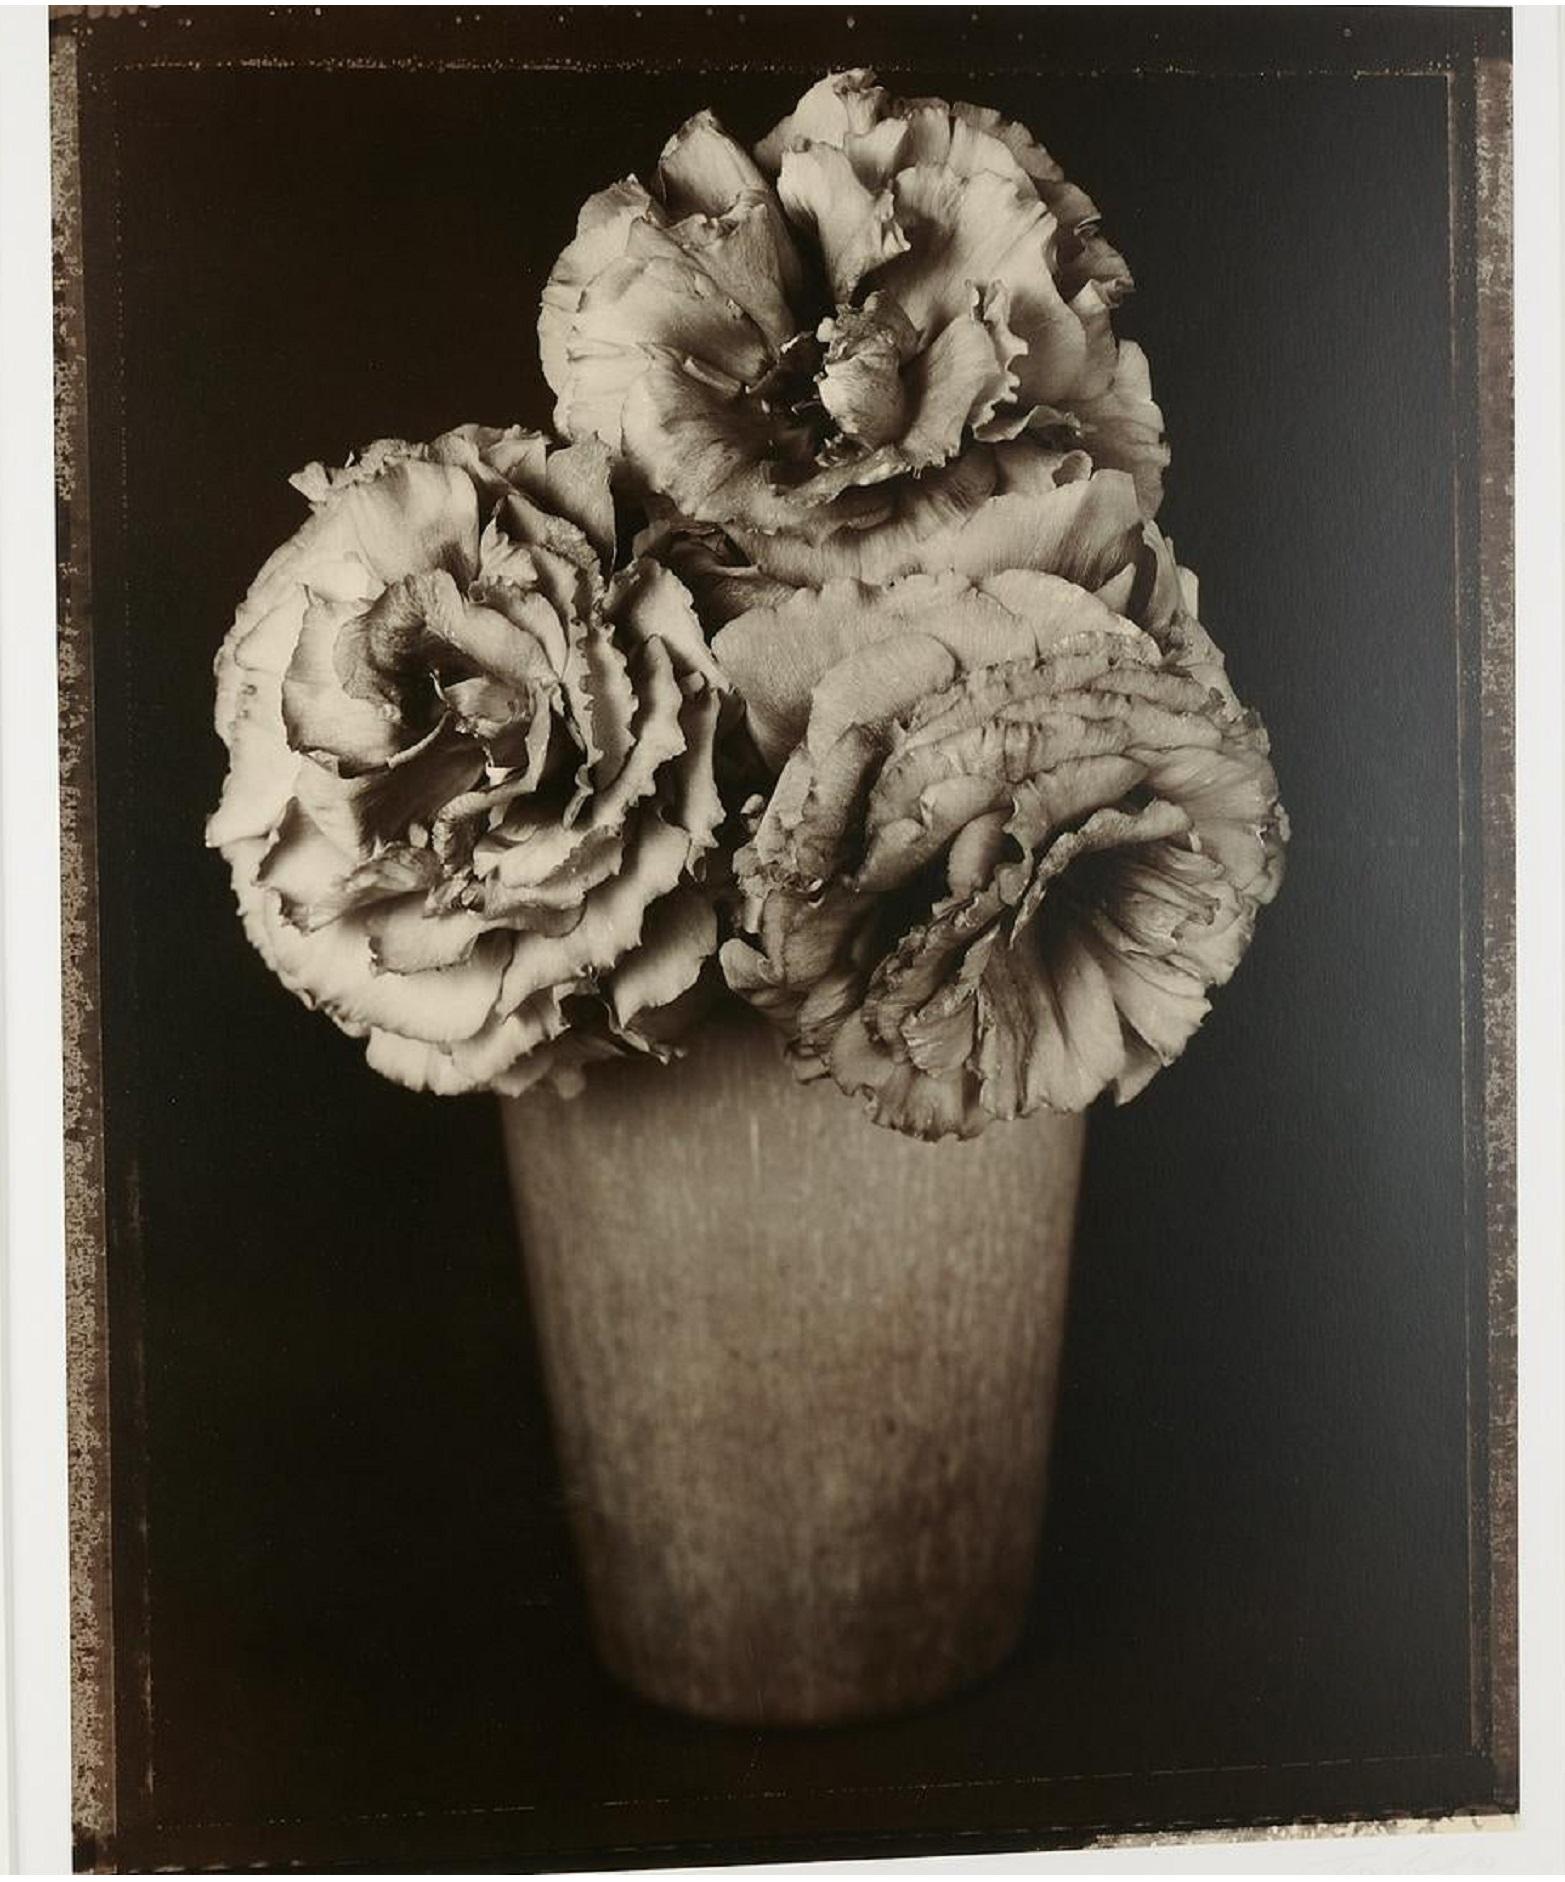 Baril, Tom (Américain, né en 1952)
Photo grand format en gélatine argentique d'une nature morte de fleurs. signée et datée à la main par Baril au crayon sous l'image. photographie en noir et blanc. l'image mesure 24,5" x 19,5 "l, l'encadrement